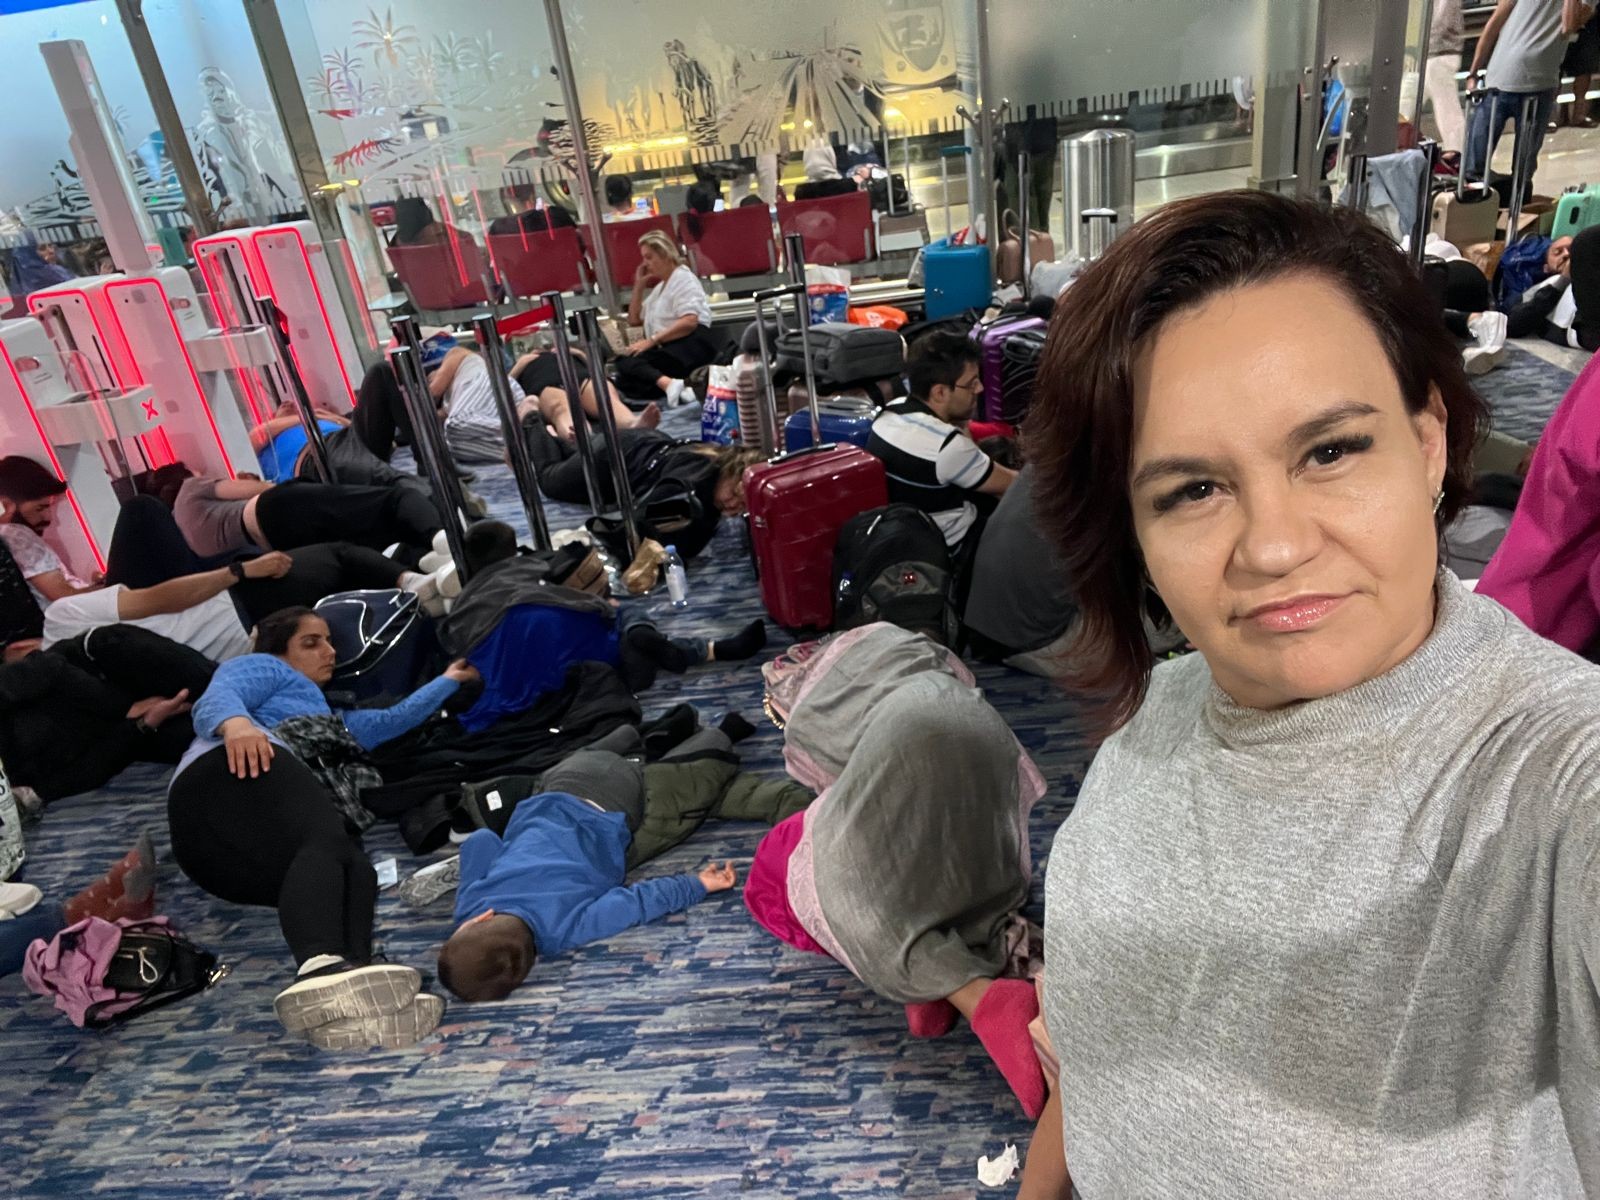 Com voo cancelado, brasileiros ficam presos em aeroporto de Dubai após temporal: 'Tivemos que dormir no chão'